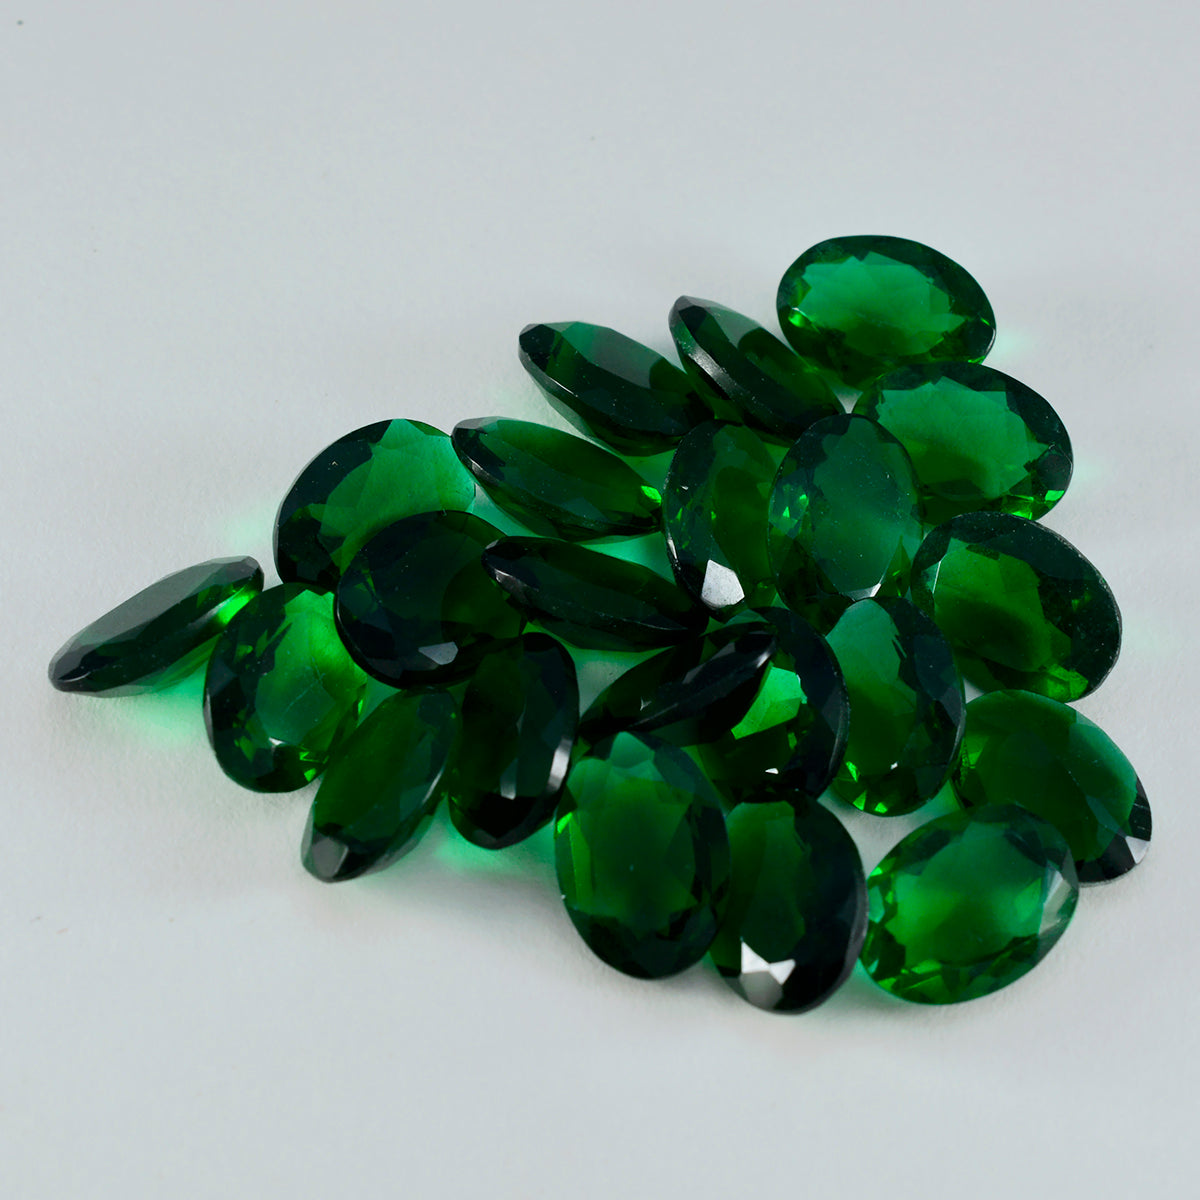 riyogems 1шт зеленый изумруд cz граненый 7x9 мм овальной формы красивый качественный драгоценный камень